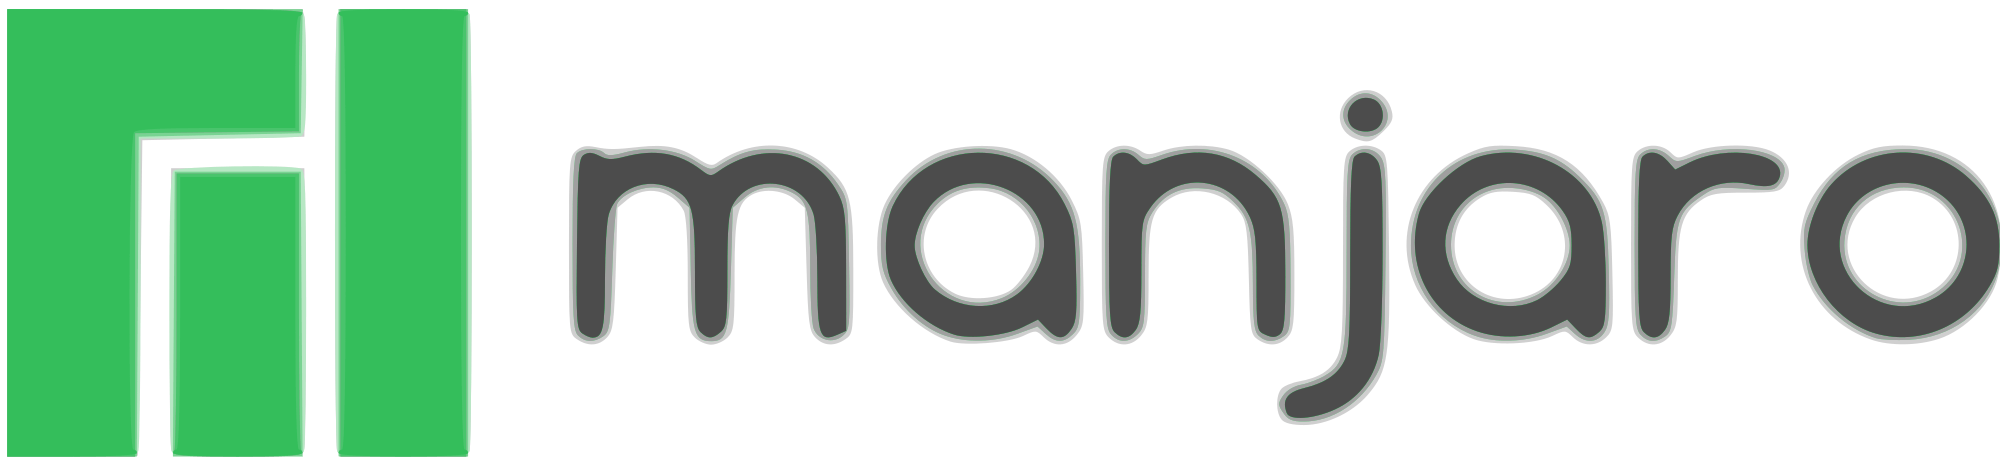 Manjaro Logo - Manjaro logo text.svg